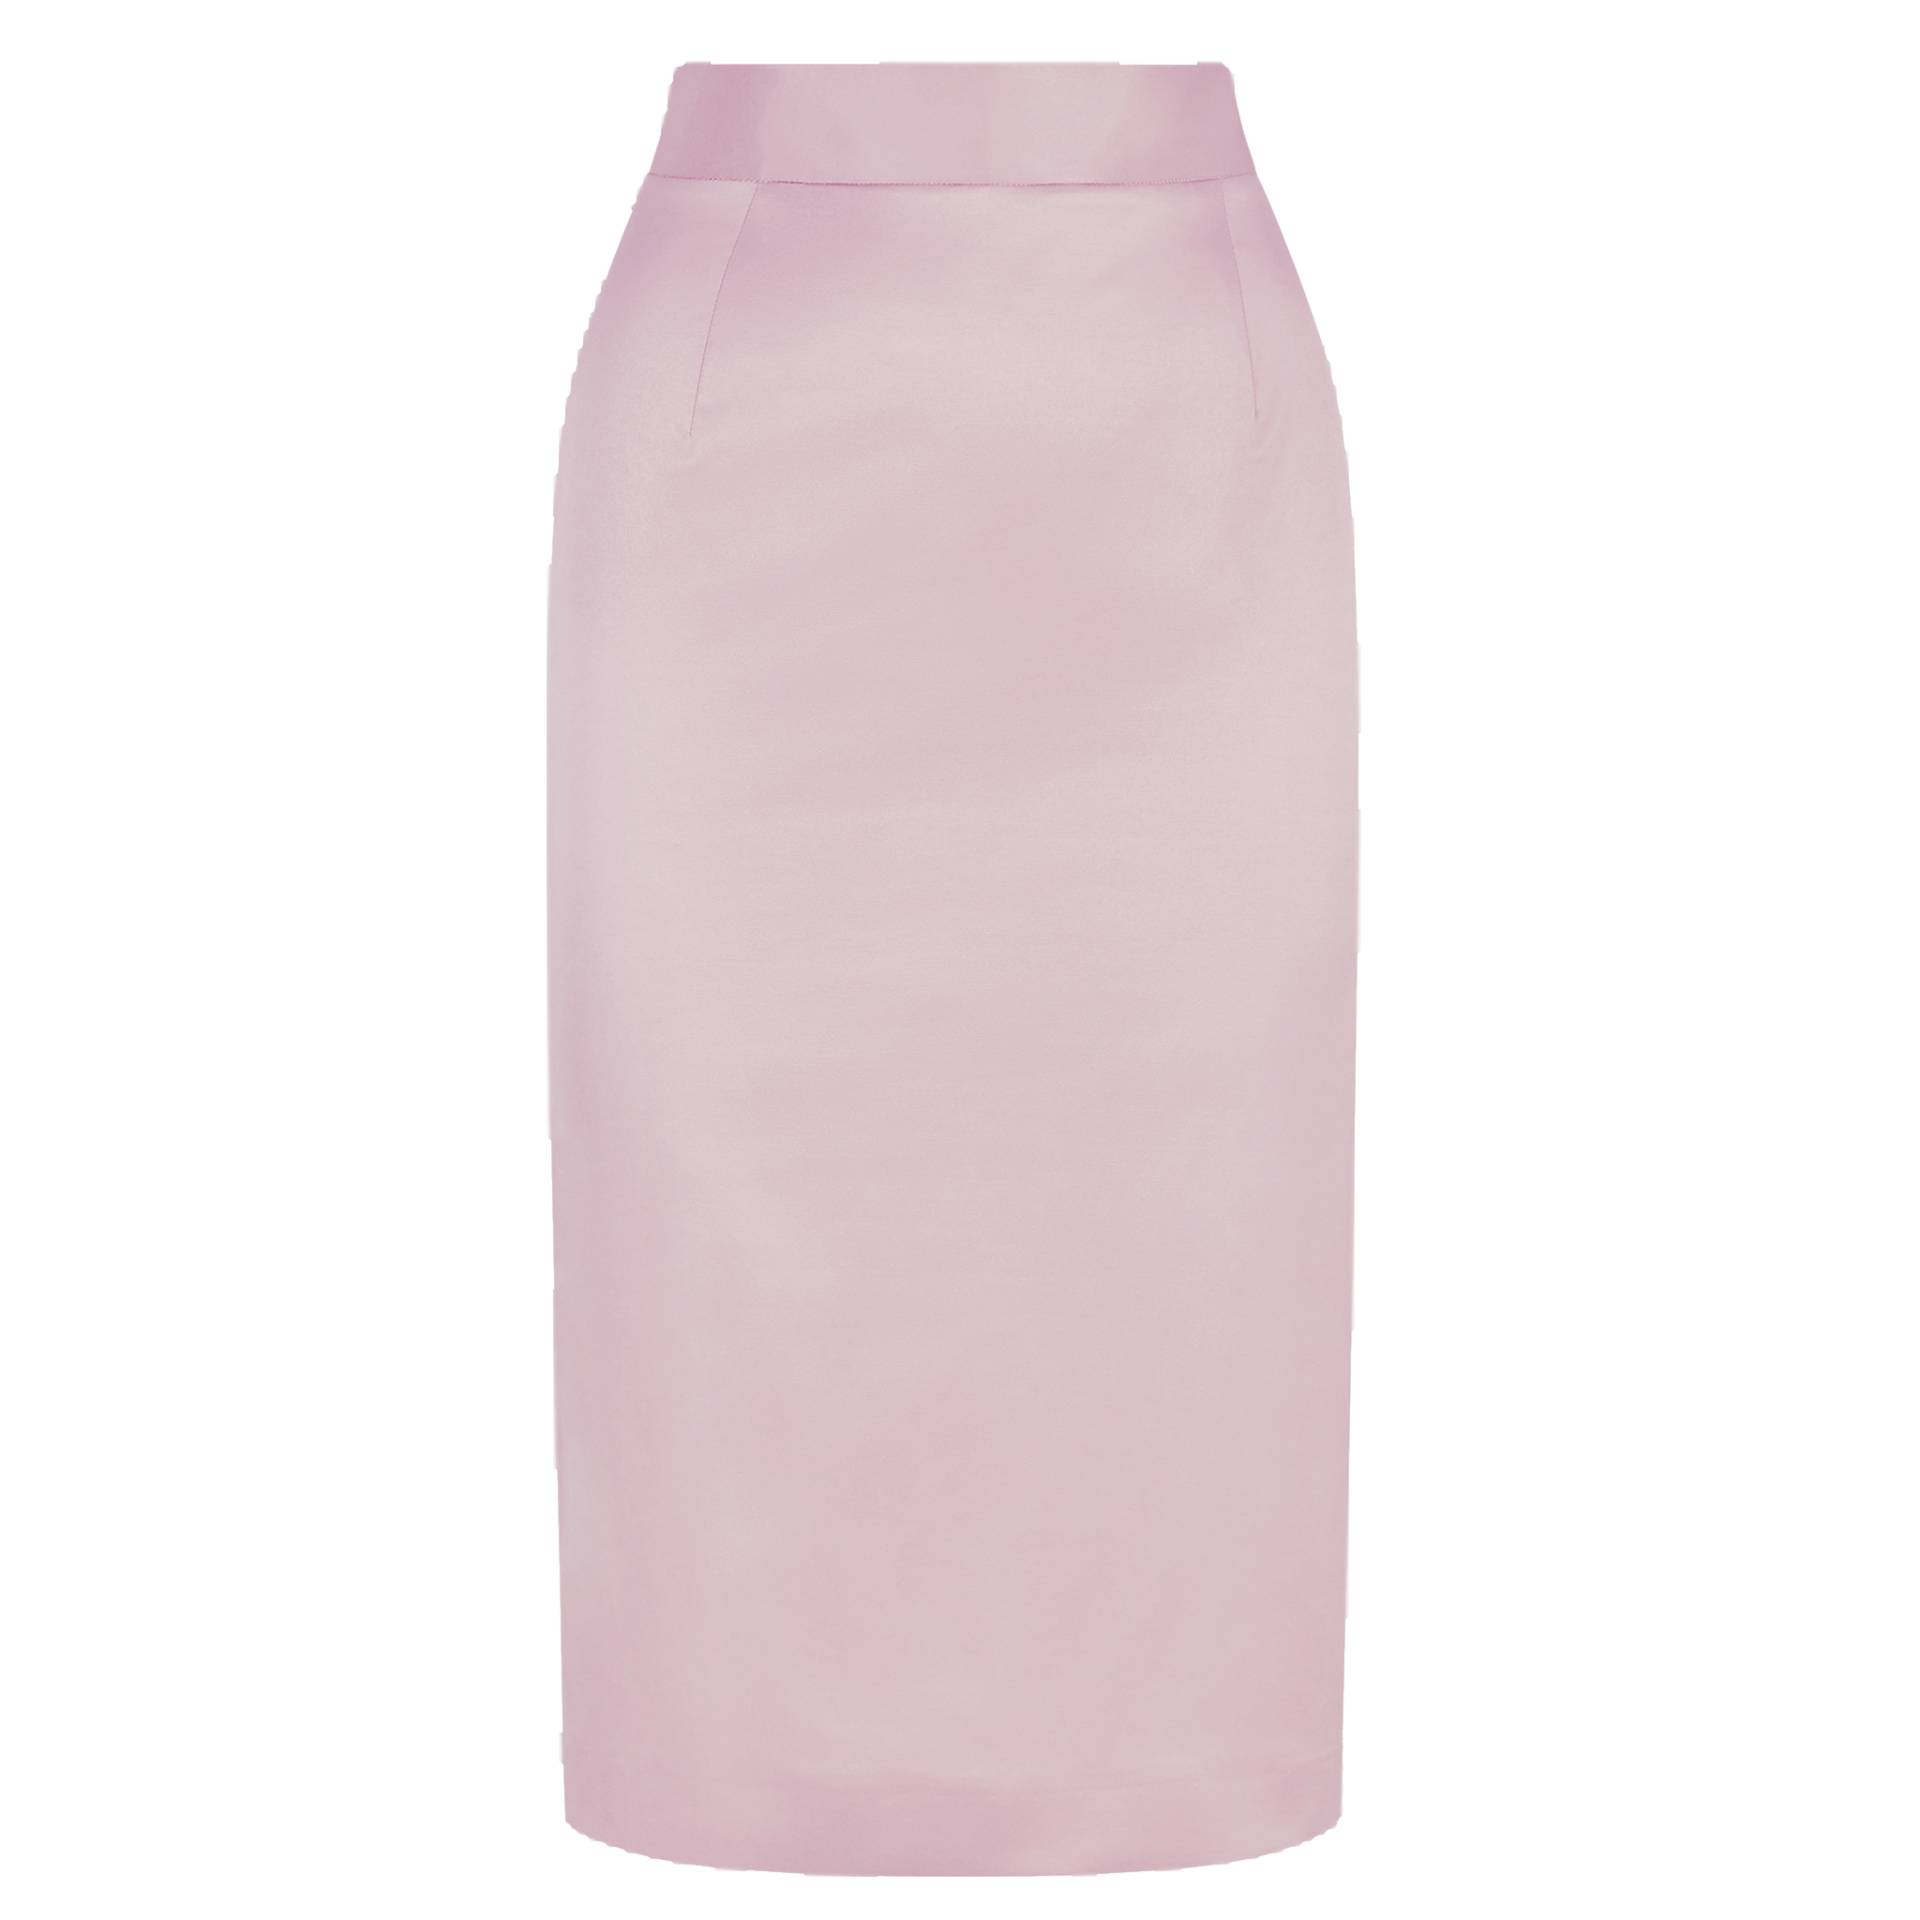 Cotton-Blend Sateen Pencil Skirt (Powder Pink) von Femponiq